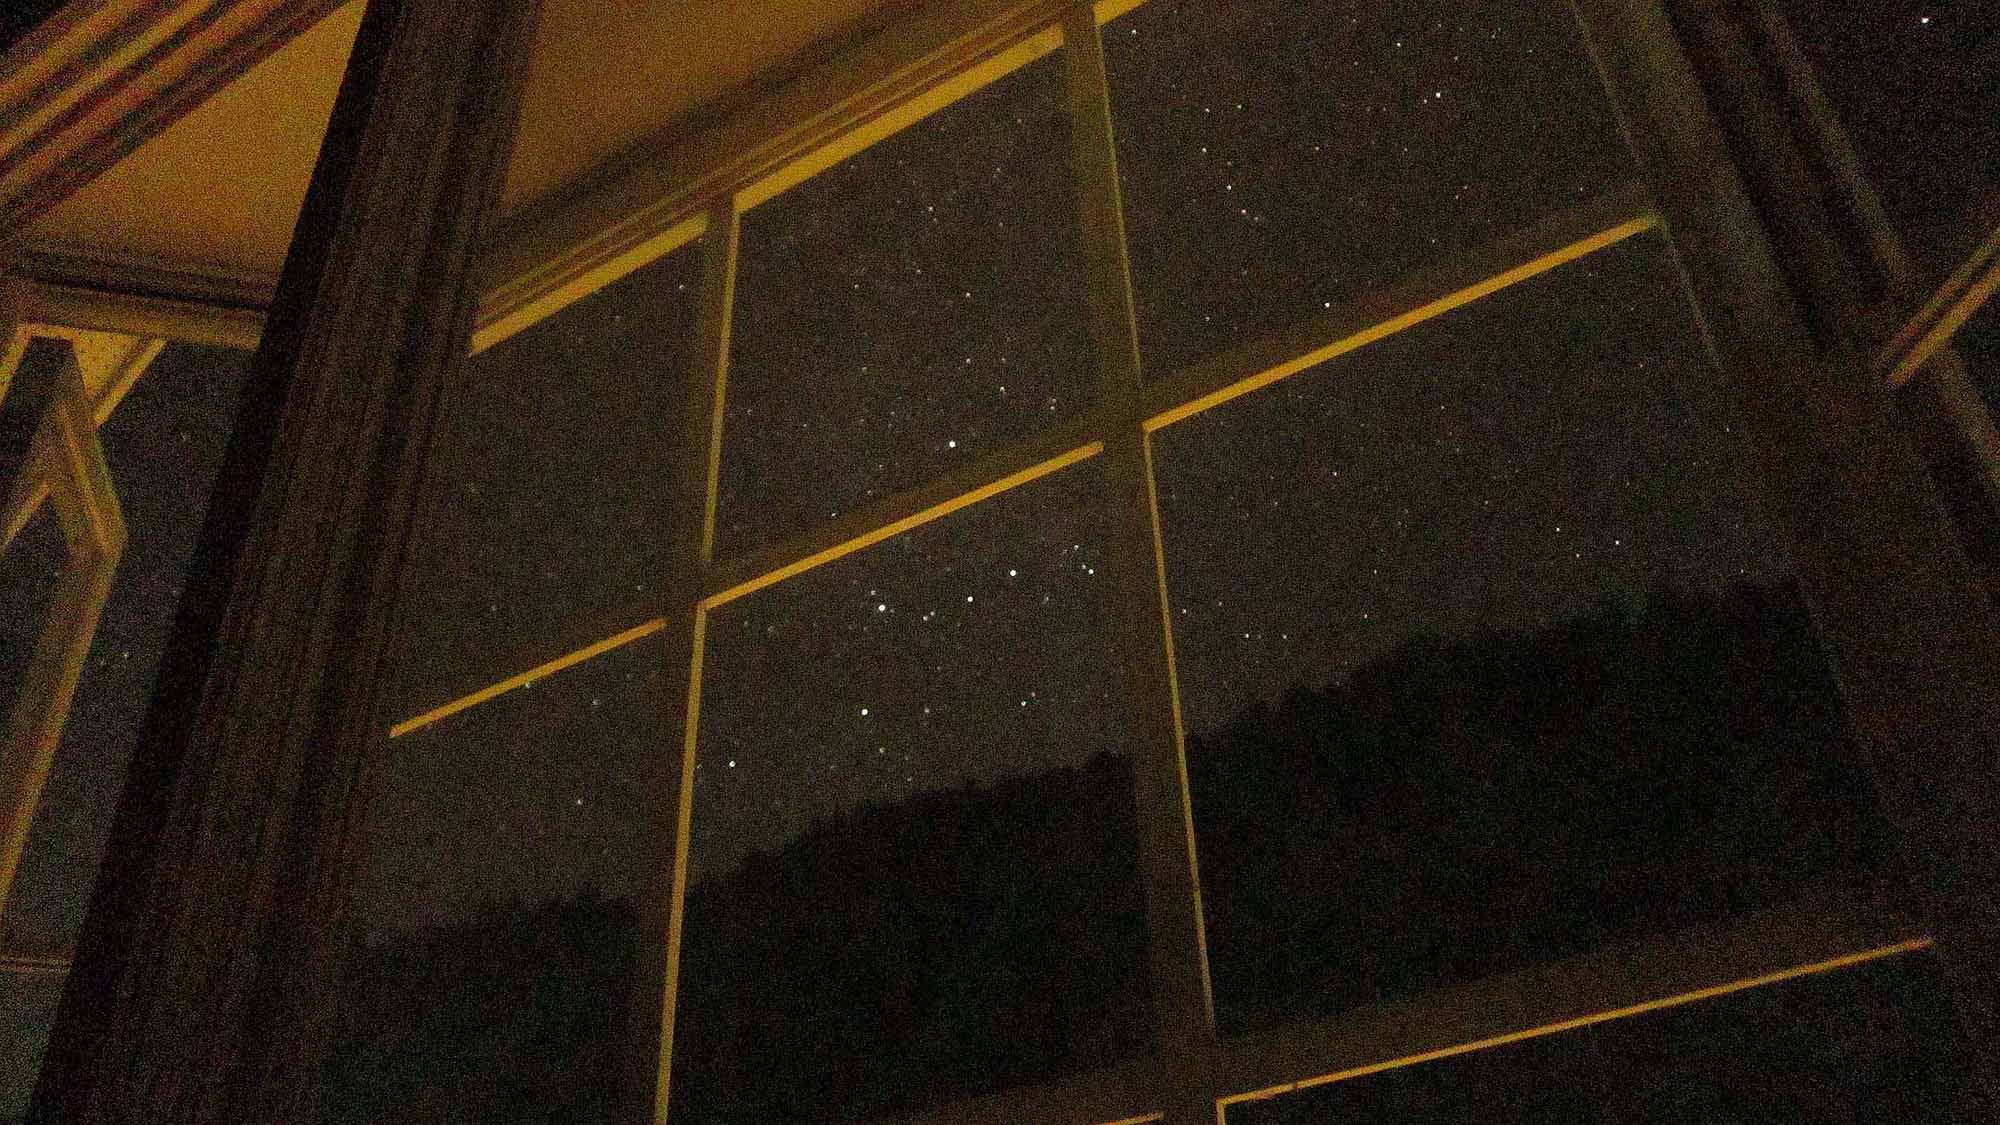 ・満点の星が見える窓辺